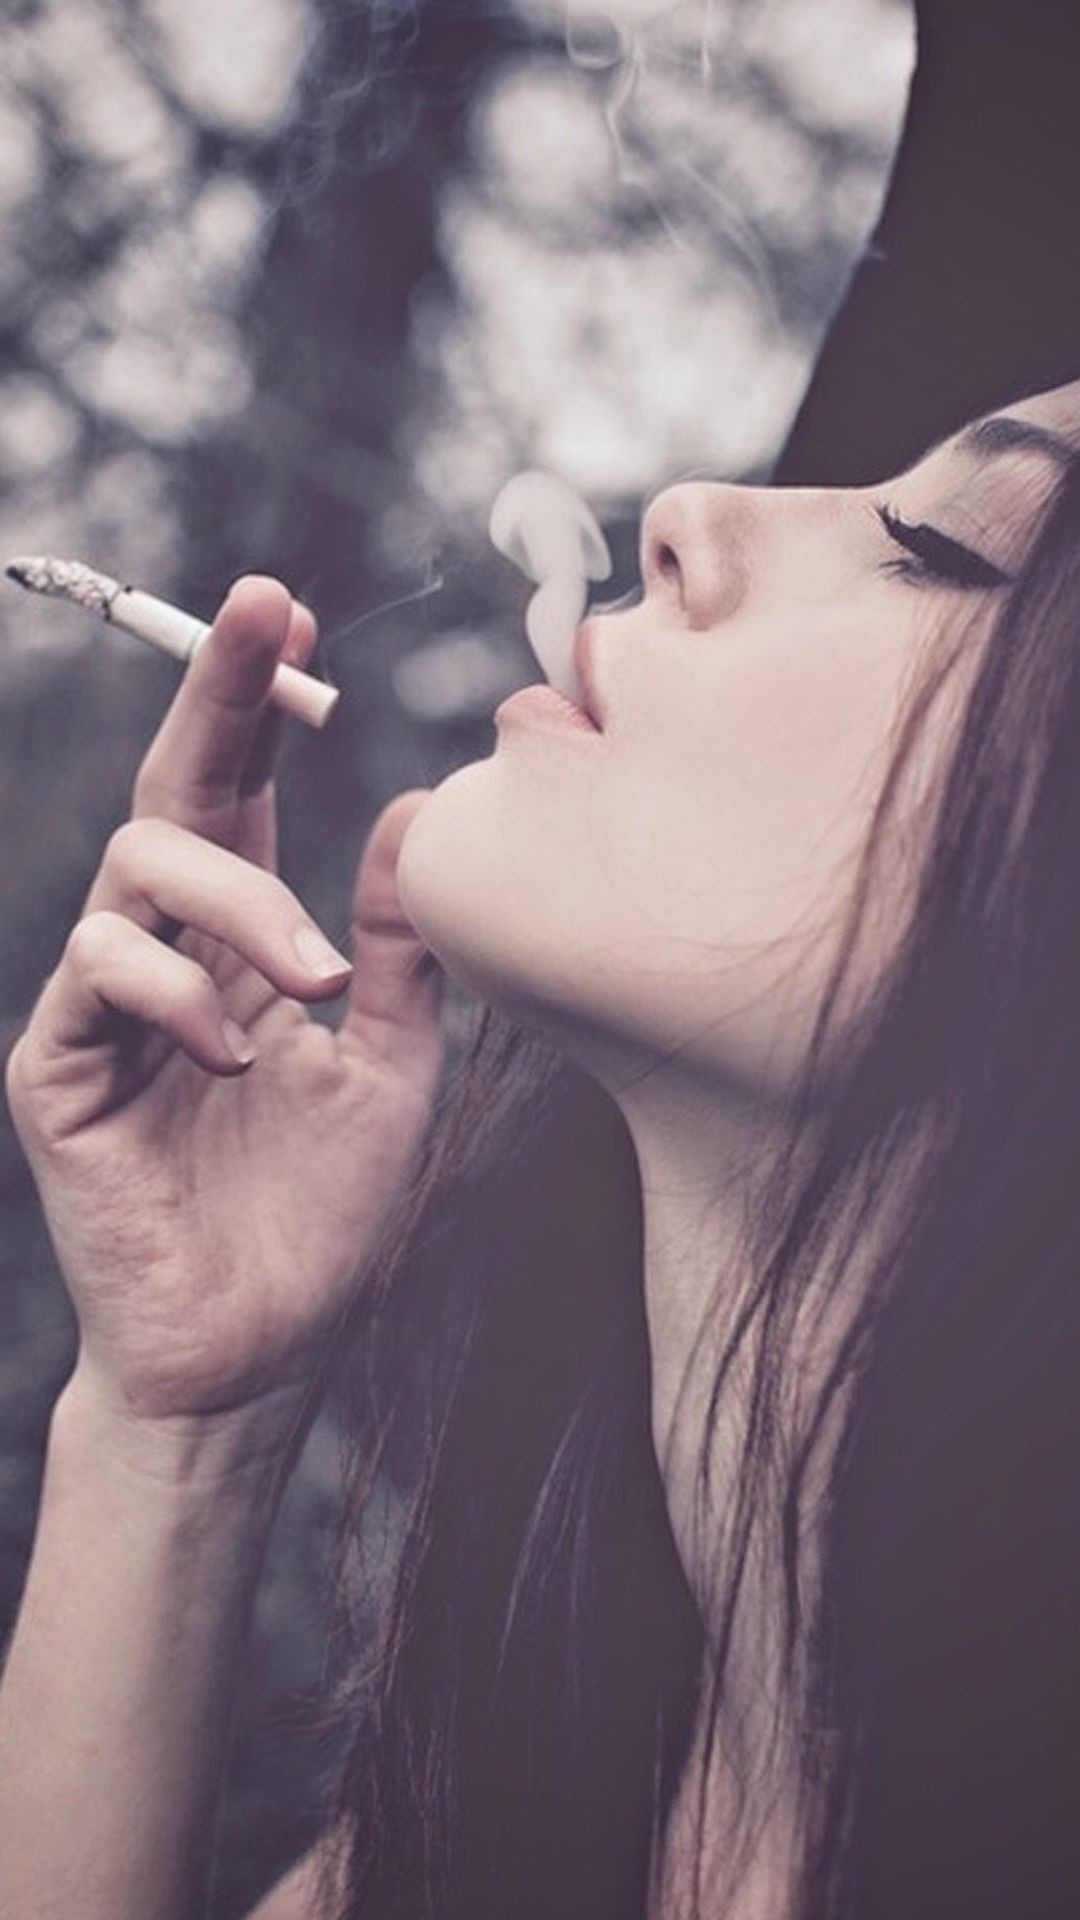 Top hình ảnh con gái hút thuốc cực chất, đầy tâm trạng - [Kích thước hình ảnh: 1080x1920 px]